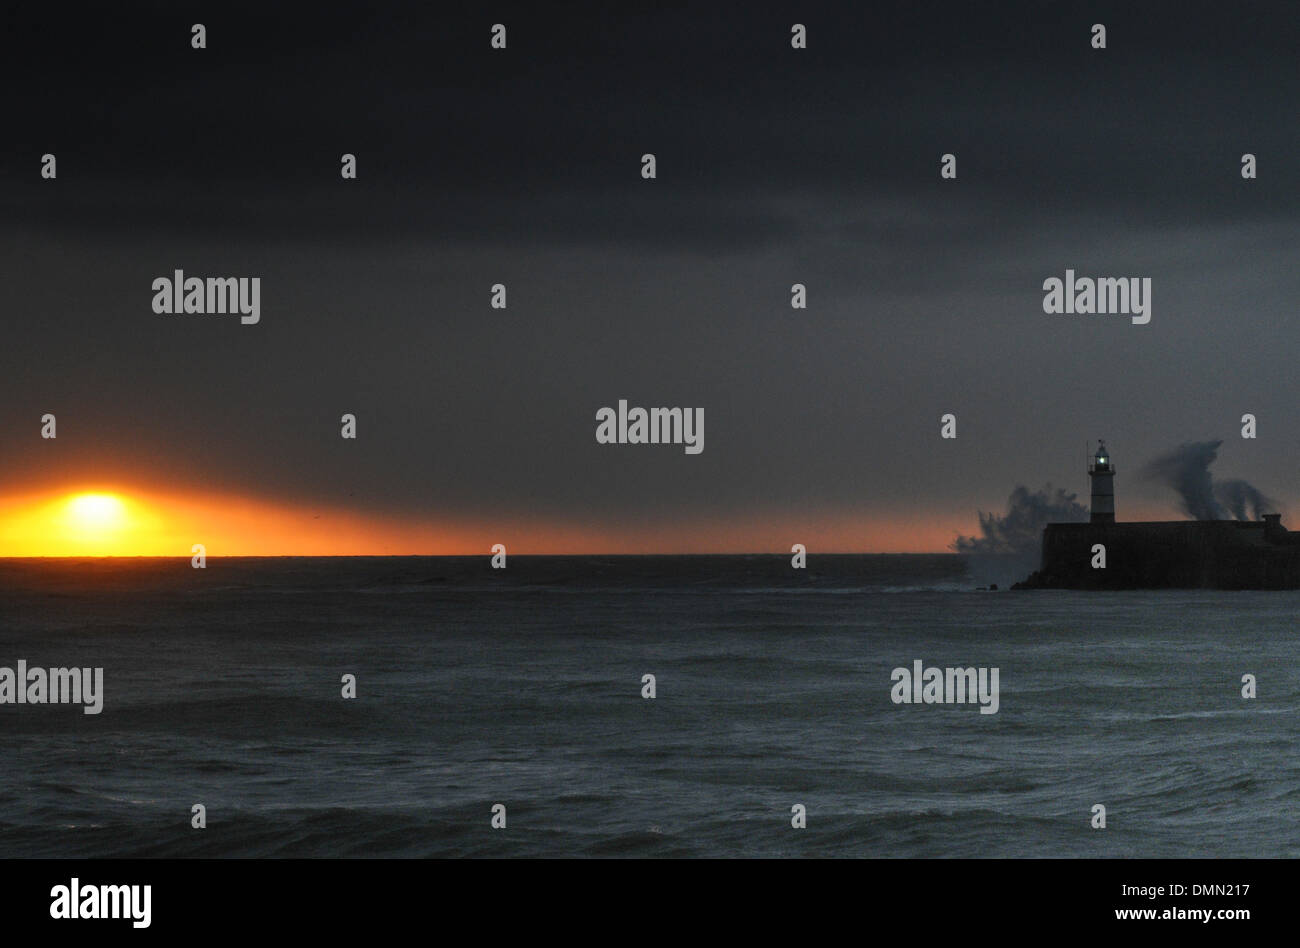 Newhaven, Sussex, UK. 16. Dezember 2013. Sonnenaufgang für kurze Zeit als Wolken und Regen Ansatz sichtbar. Orkanartigen Winden schüren die Wellen, die über den Westarm in Newhaven abstürzen. Bildnachweis: David Burr/Alamy Live-Nachrichten Stockfoto